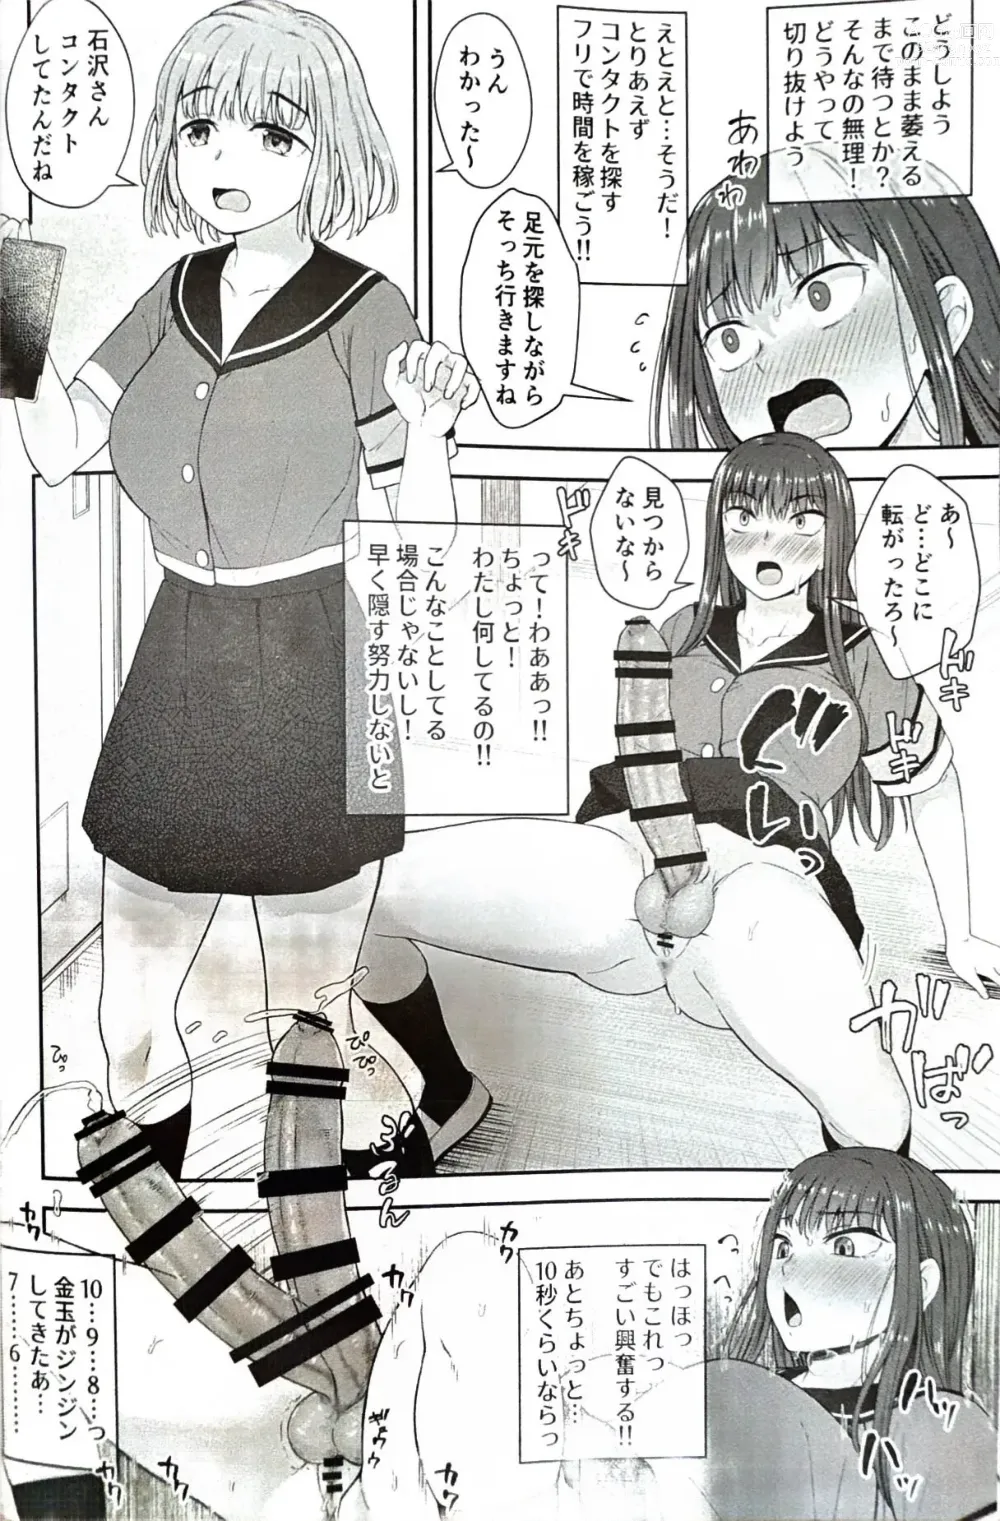 Page 9 of doujinshi Danseiki Roshutsu Jidori-han no Shoutai wa Kanojo dake ga Shitteiru.